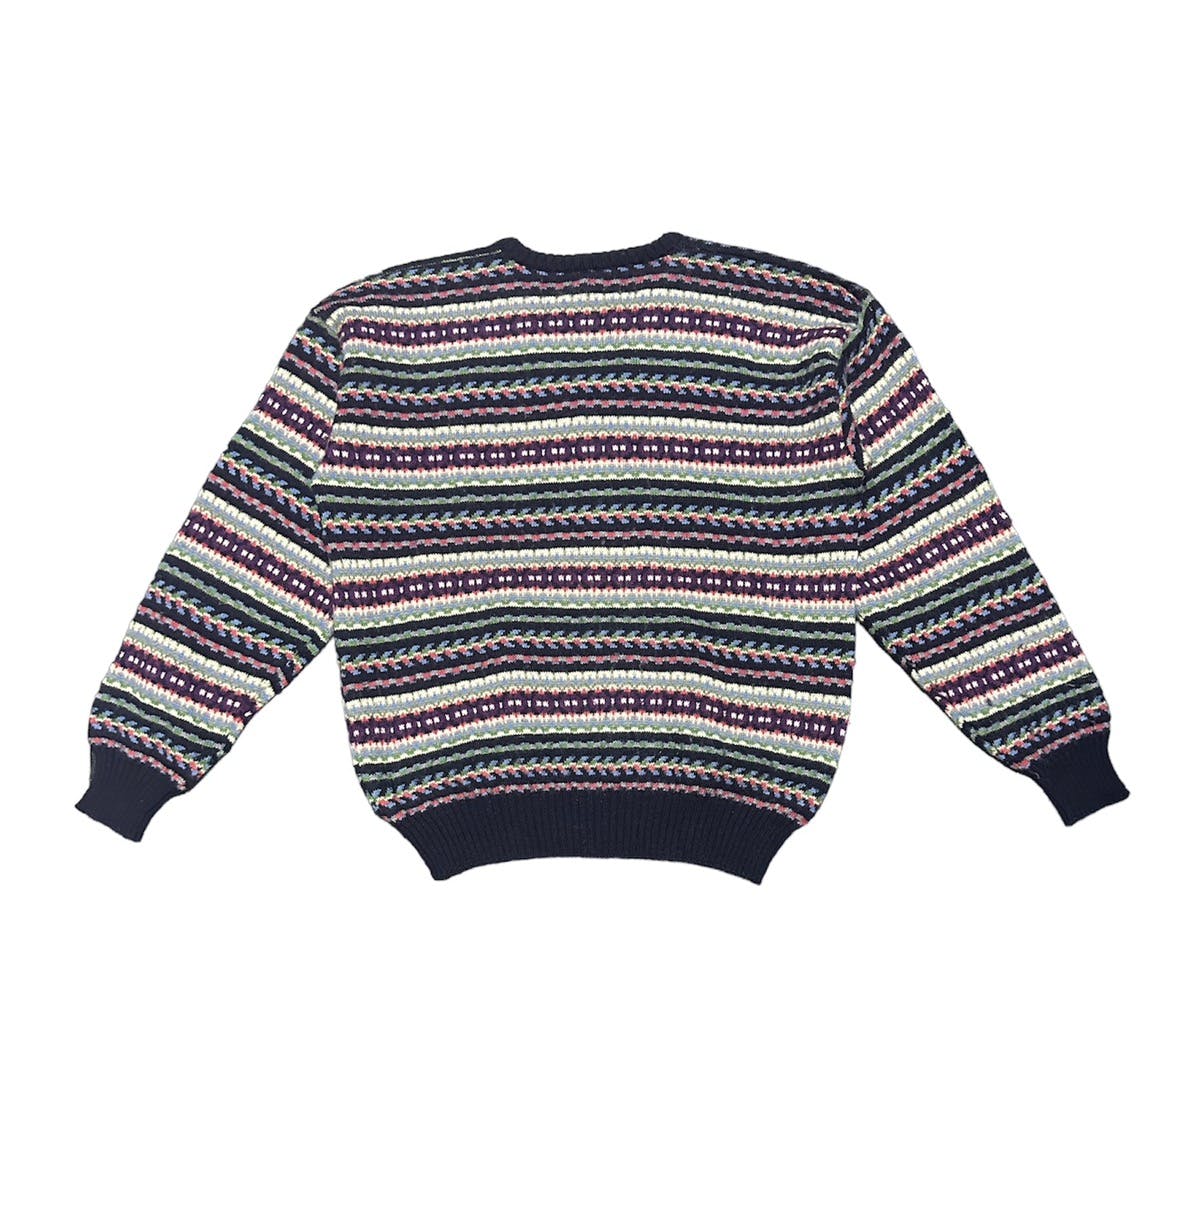 Nigel cabourn wool knitwear - 2